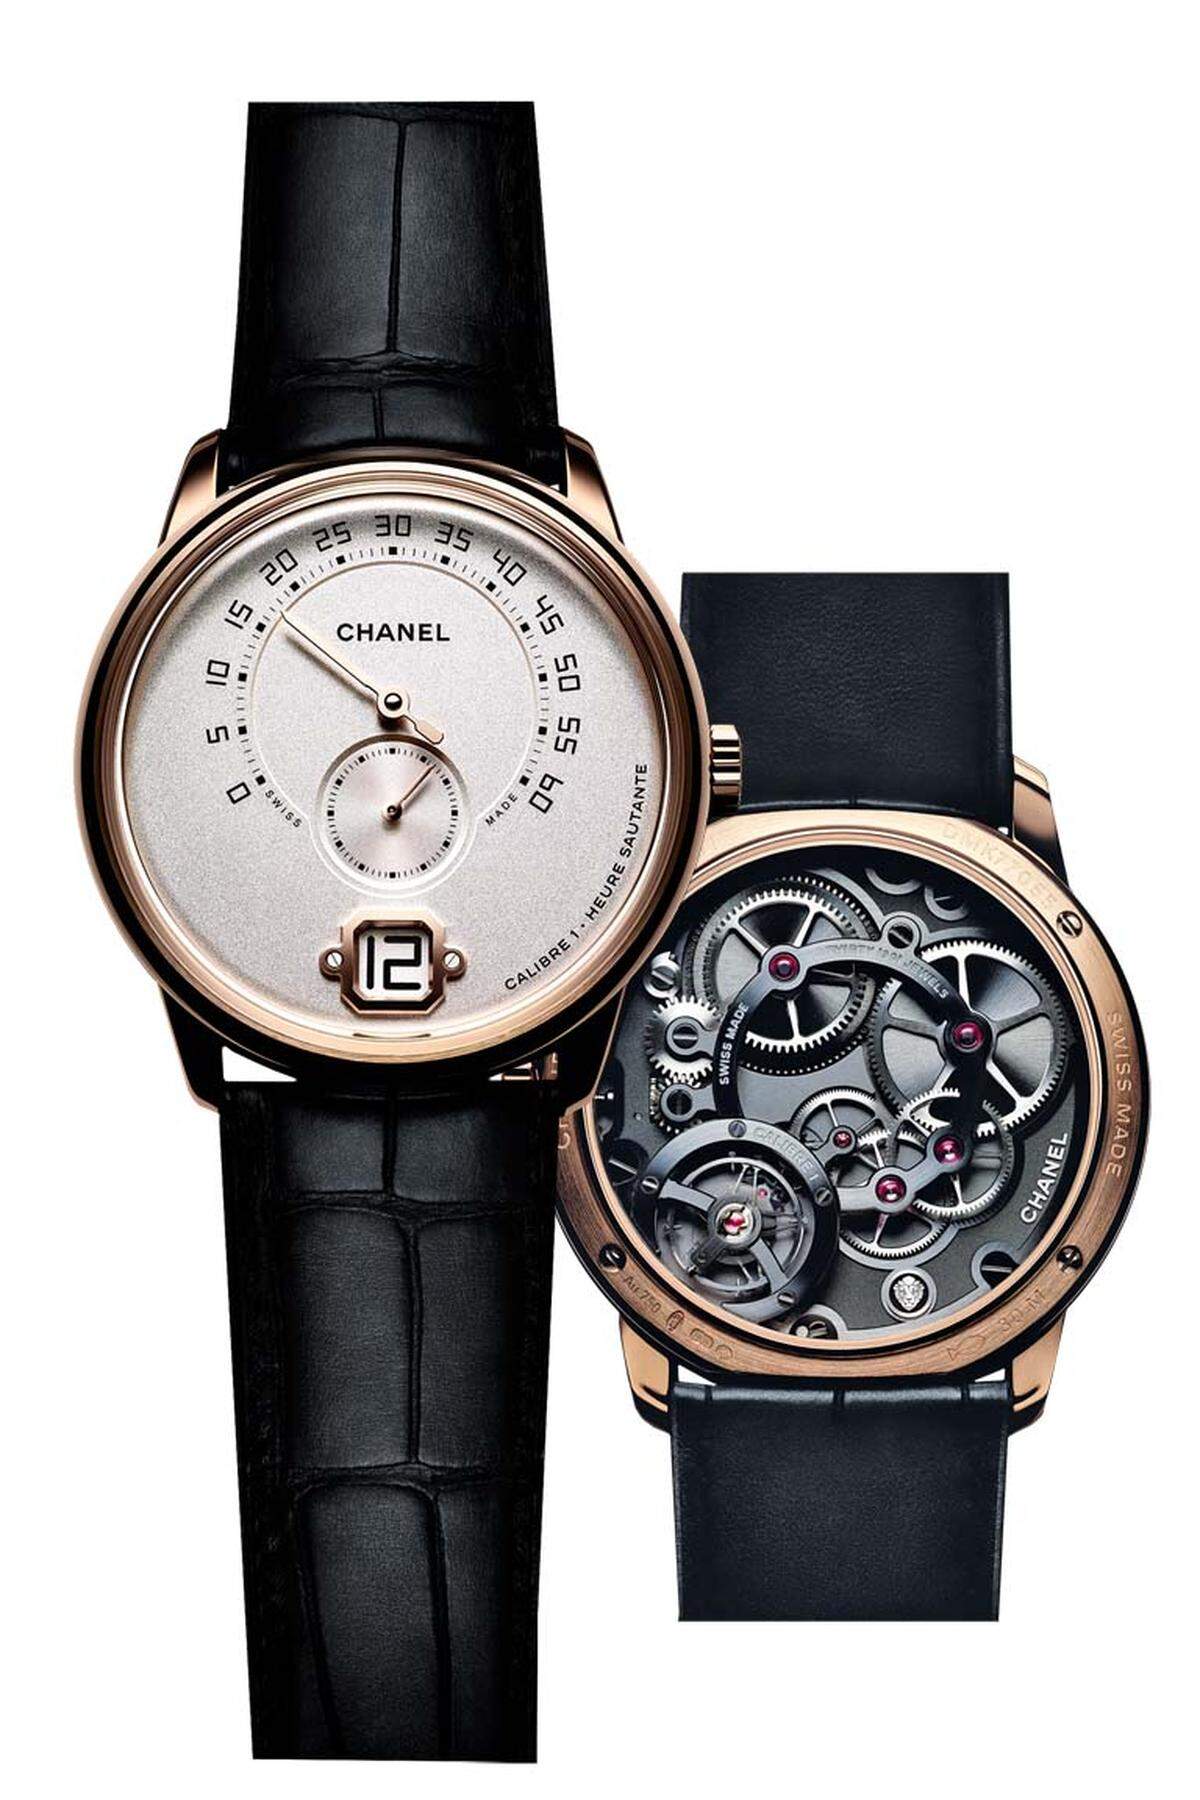 So sieht das 40 mm große Debüt des Luxuslabels als Uhrenmanufaktur aus. Das „Calibre 1“ wurde selbst entwickelt und gefertigt. Uns gefällt der starke Kontrast zwischen dem Design des Zifferblatts und des Uhrwerks.